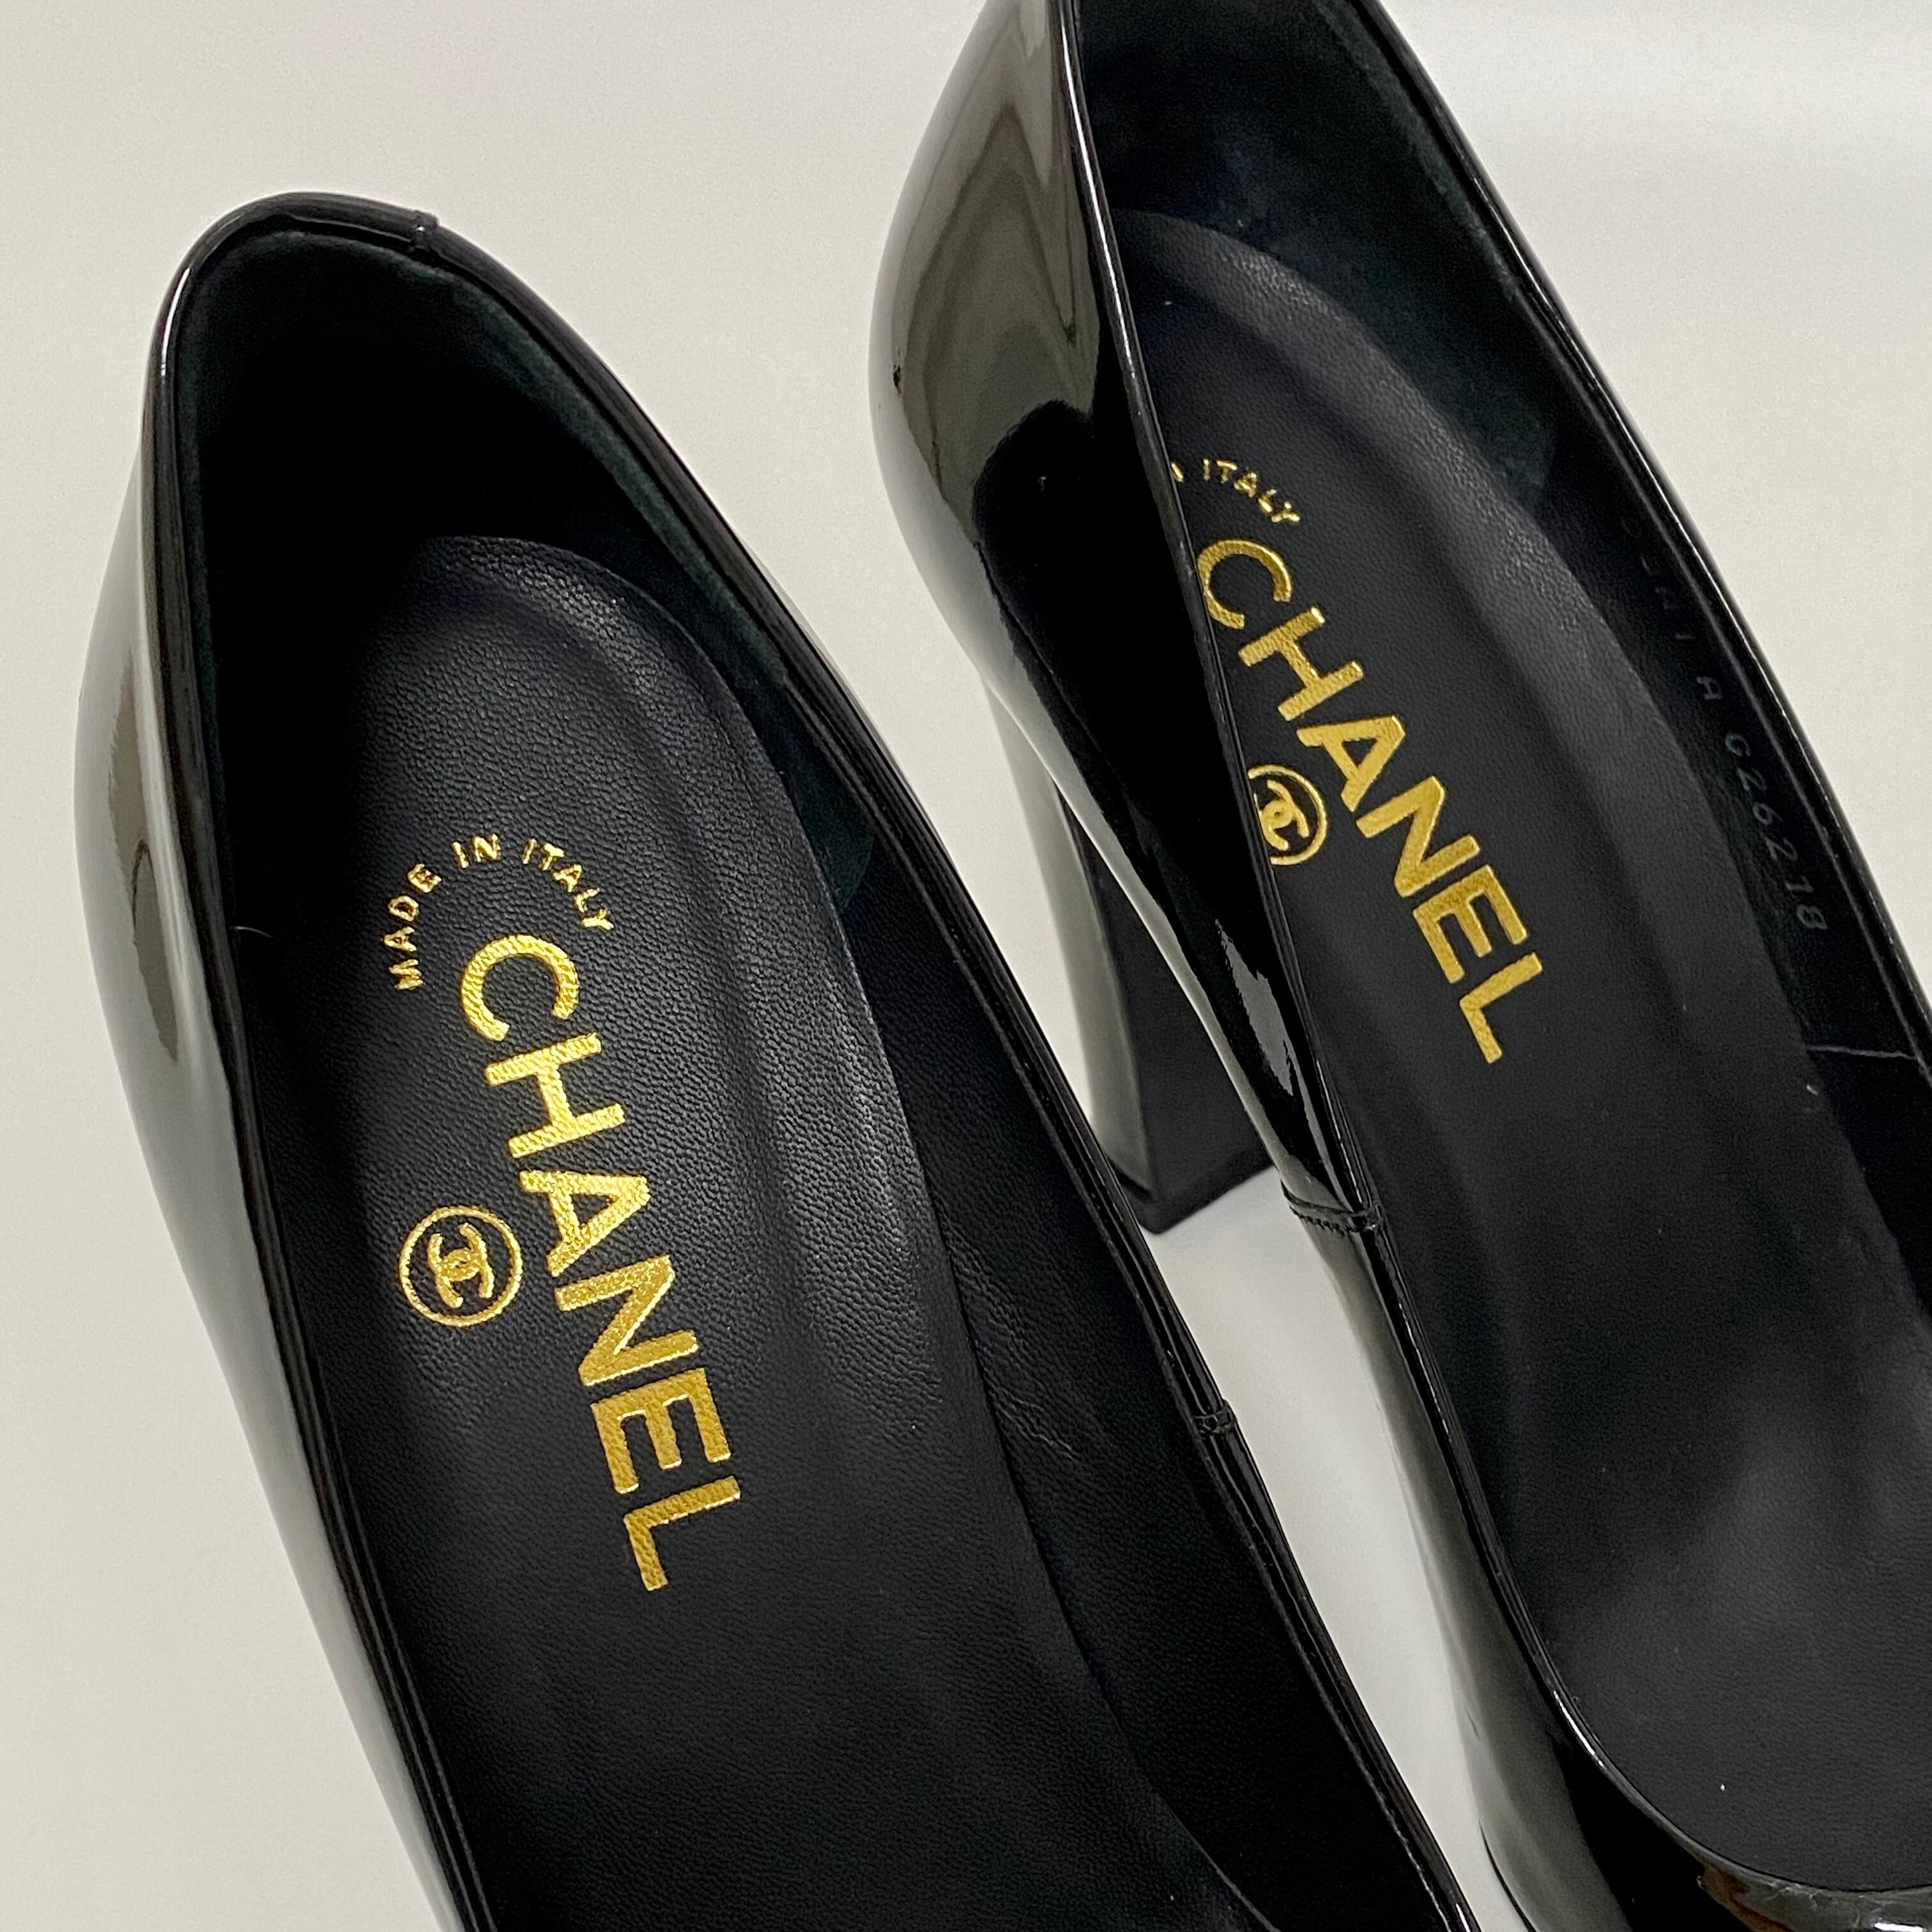 CHANEL シャネル パンプス エナメル ブラック 36.5サイズ 靴 8921 ...